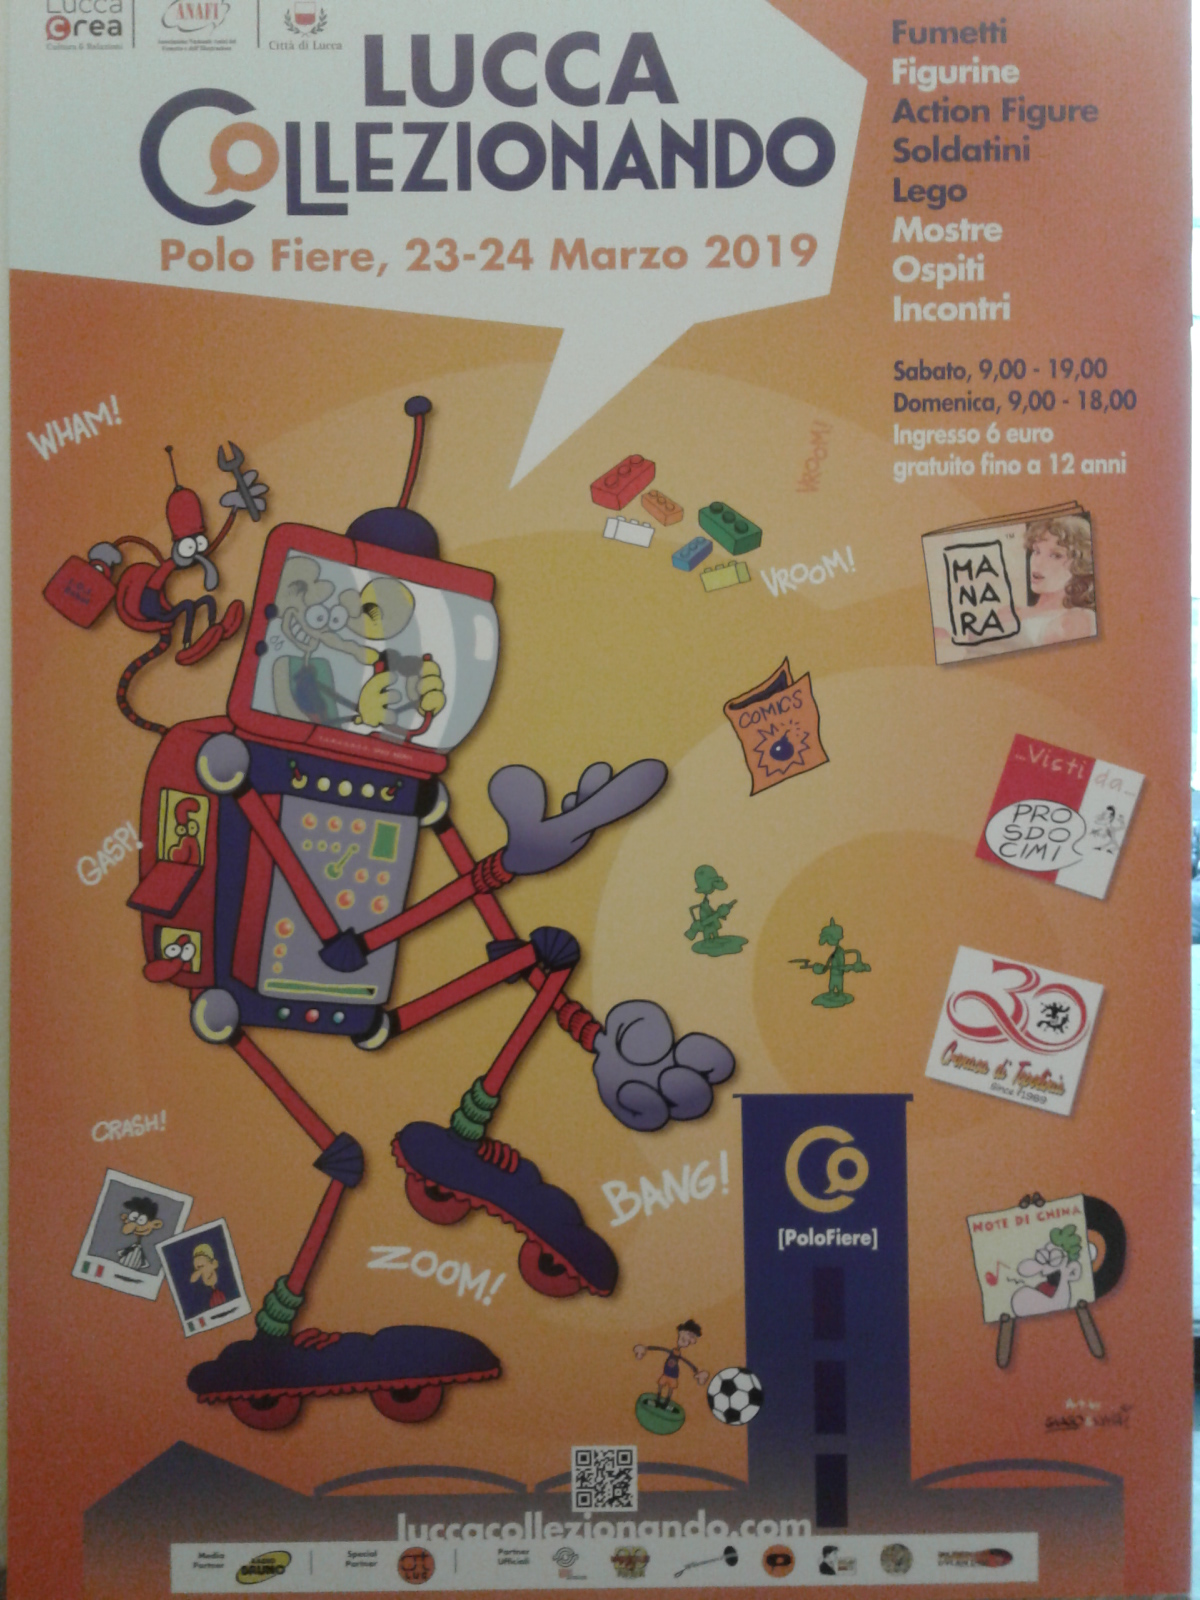 Lucca Collezionando 2019, annunciate le date della manifestazione dedicata al fumetto